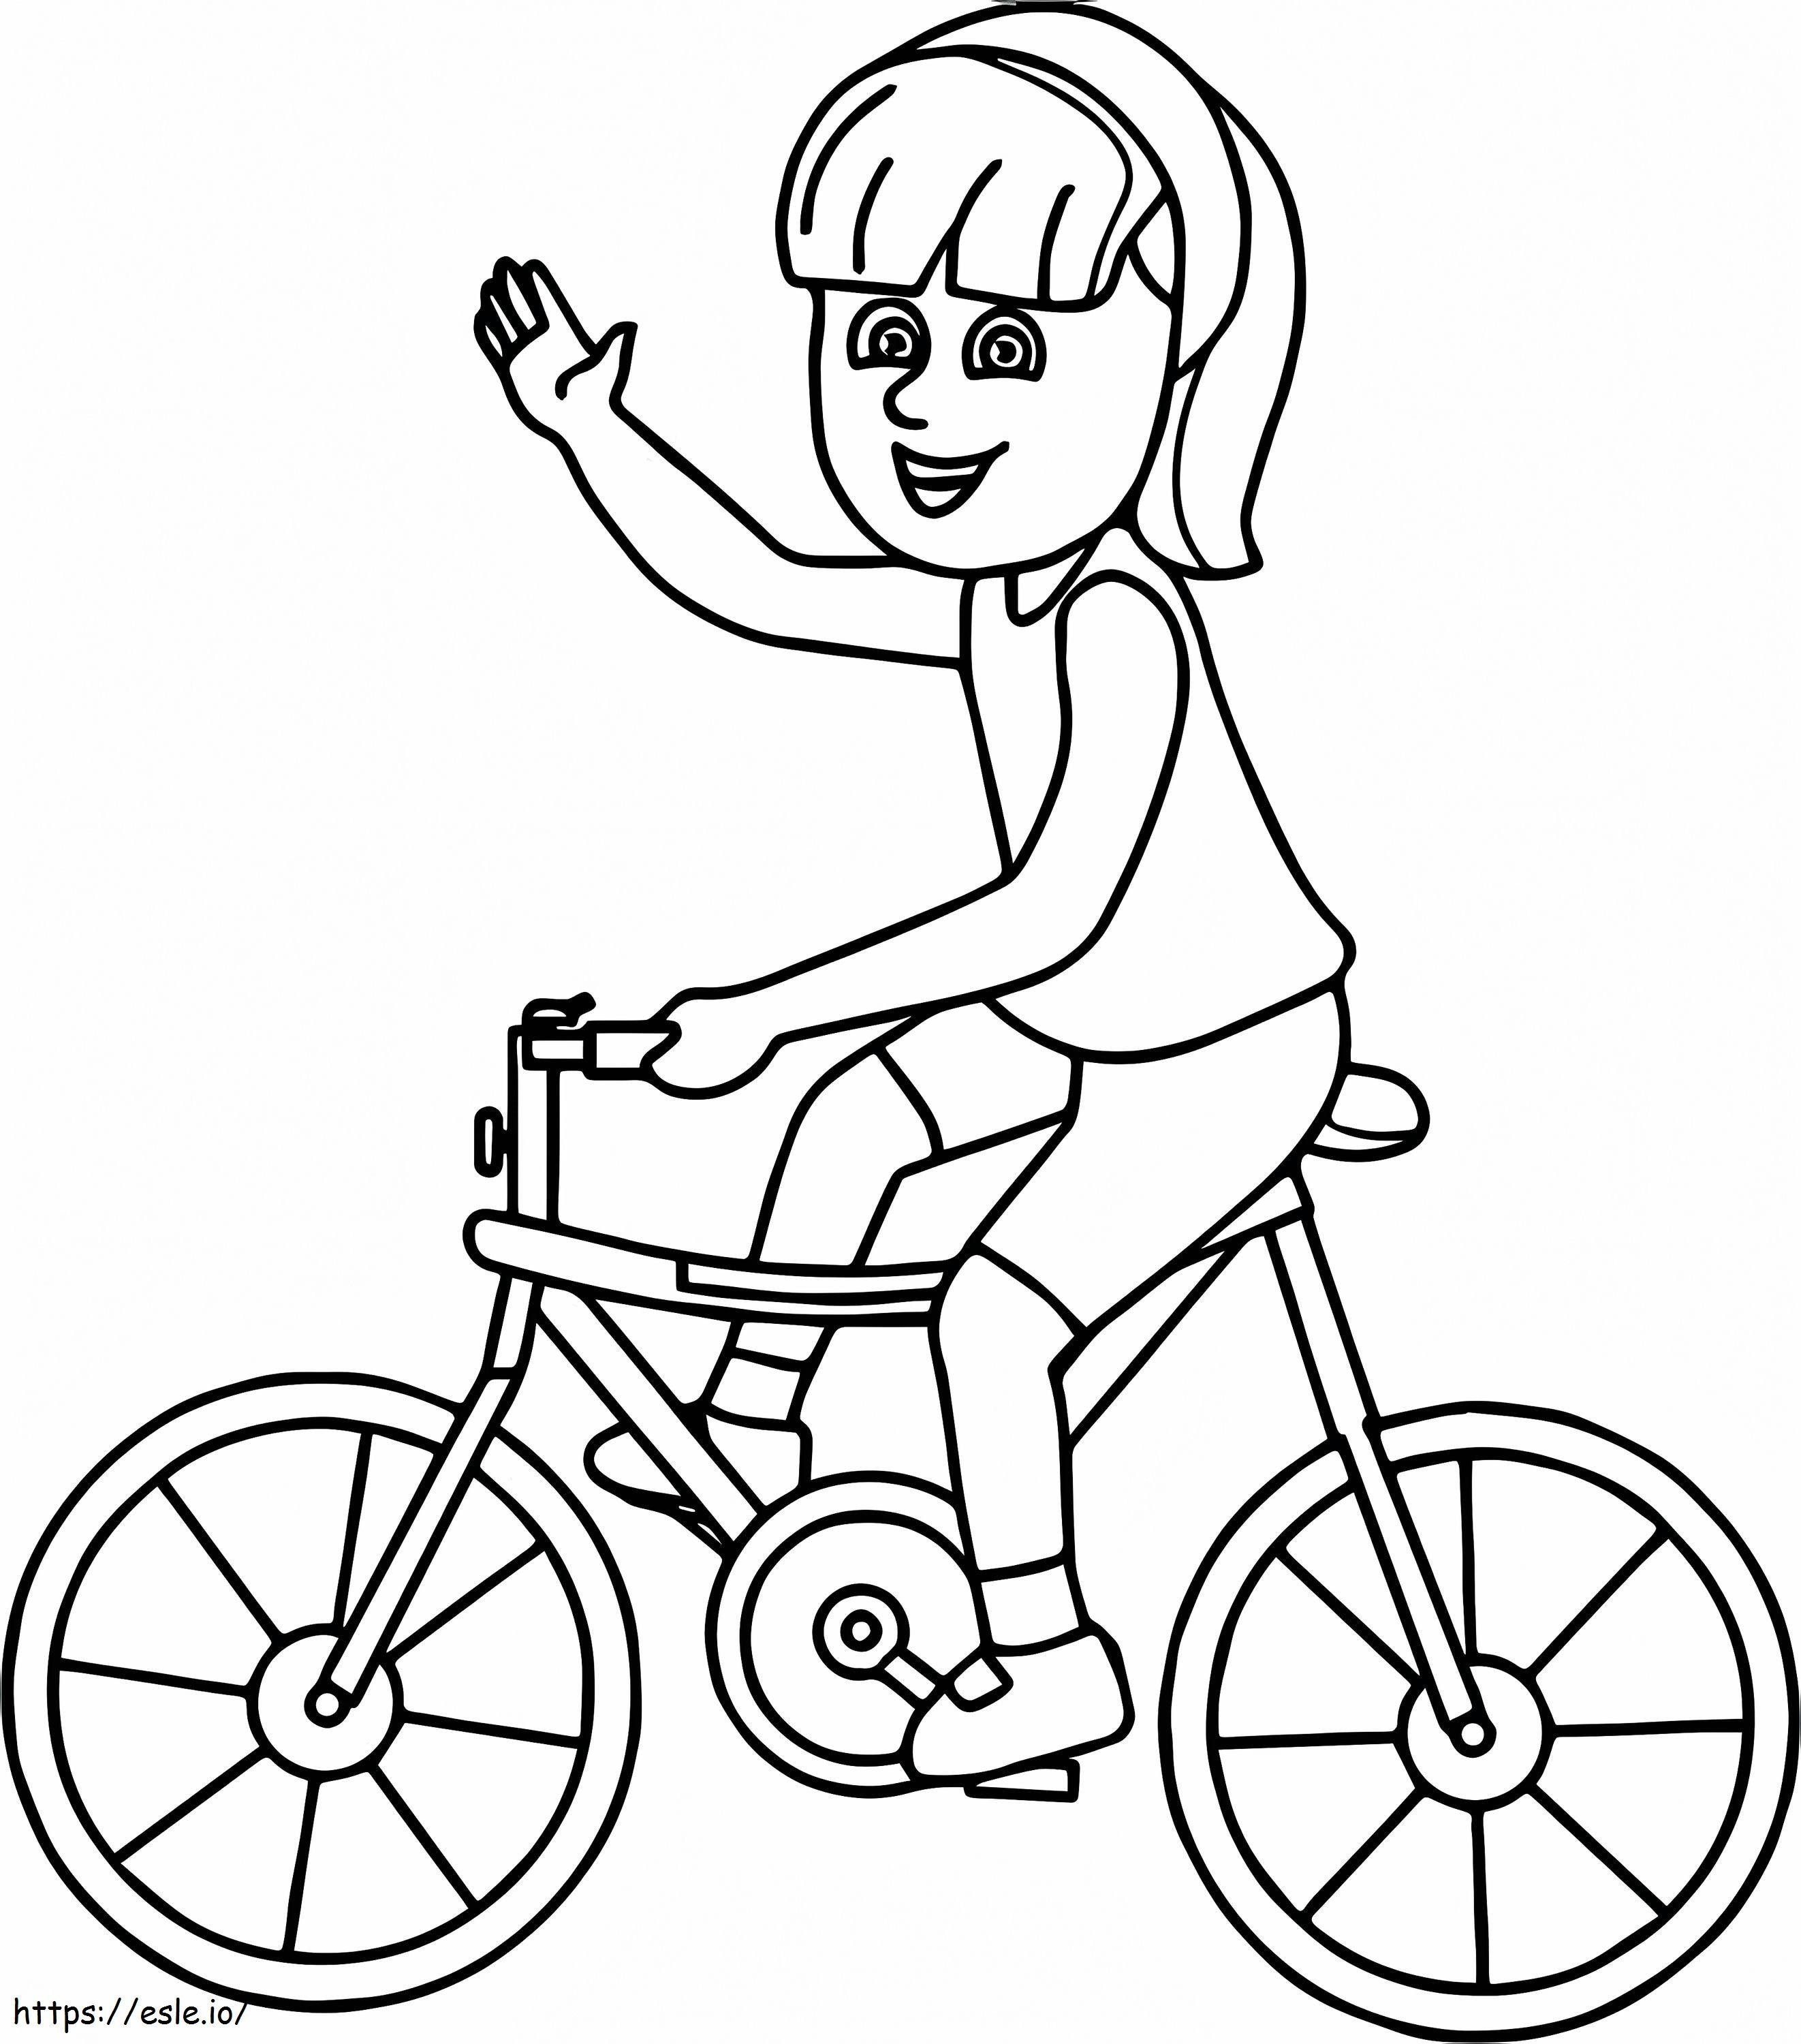  Bisiklete Binen Kız Bisiklet Sayfasında boyama